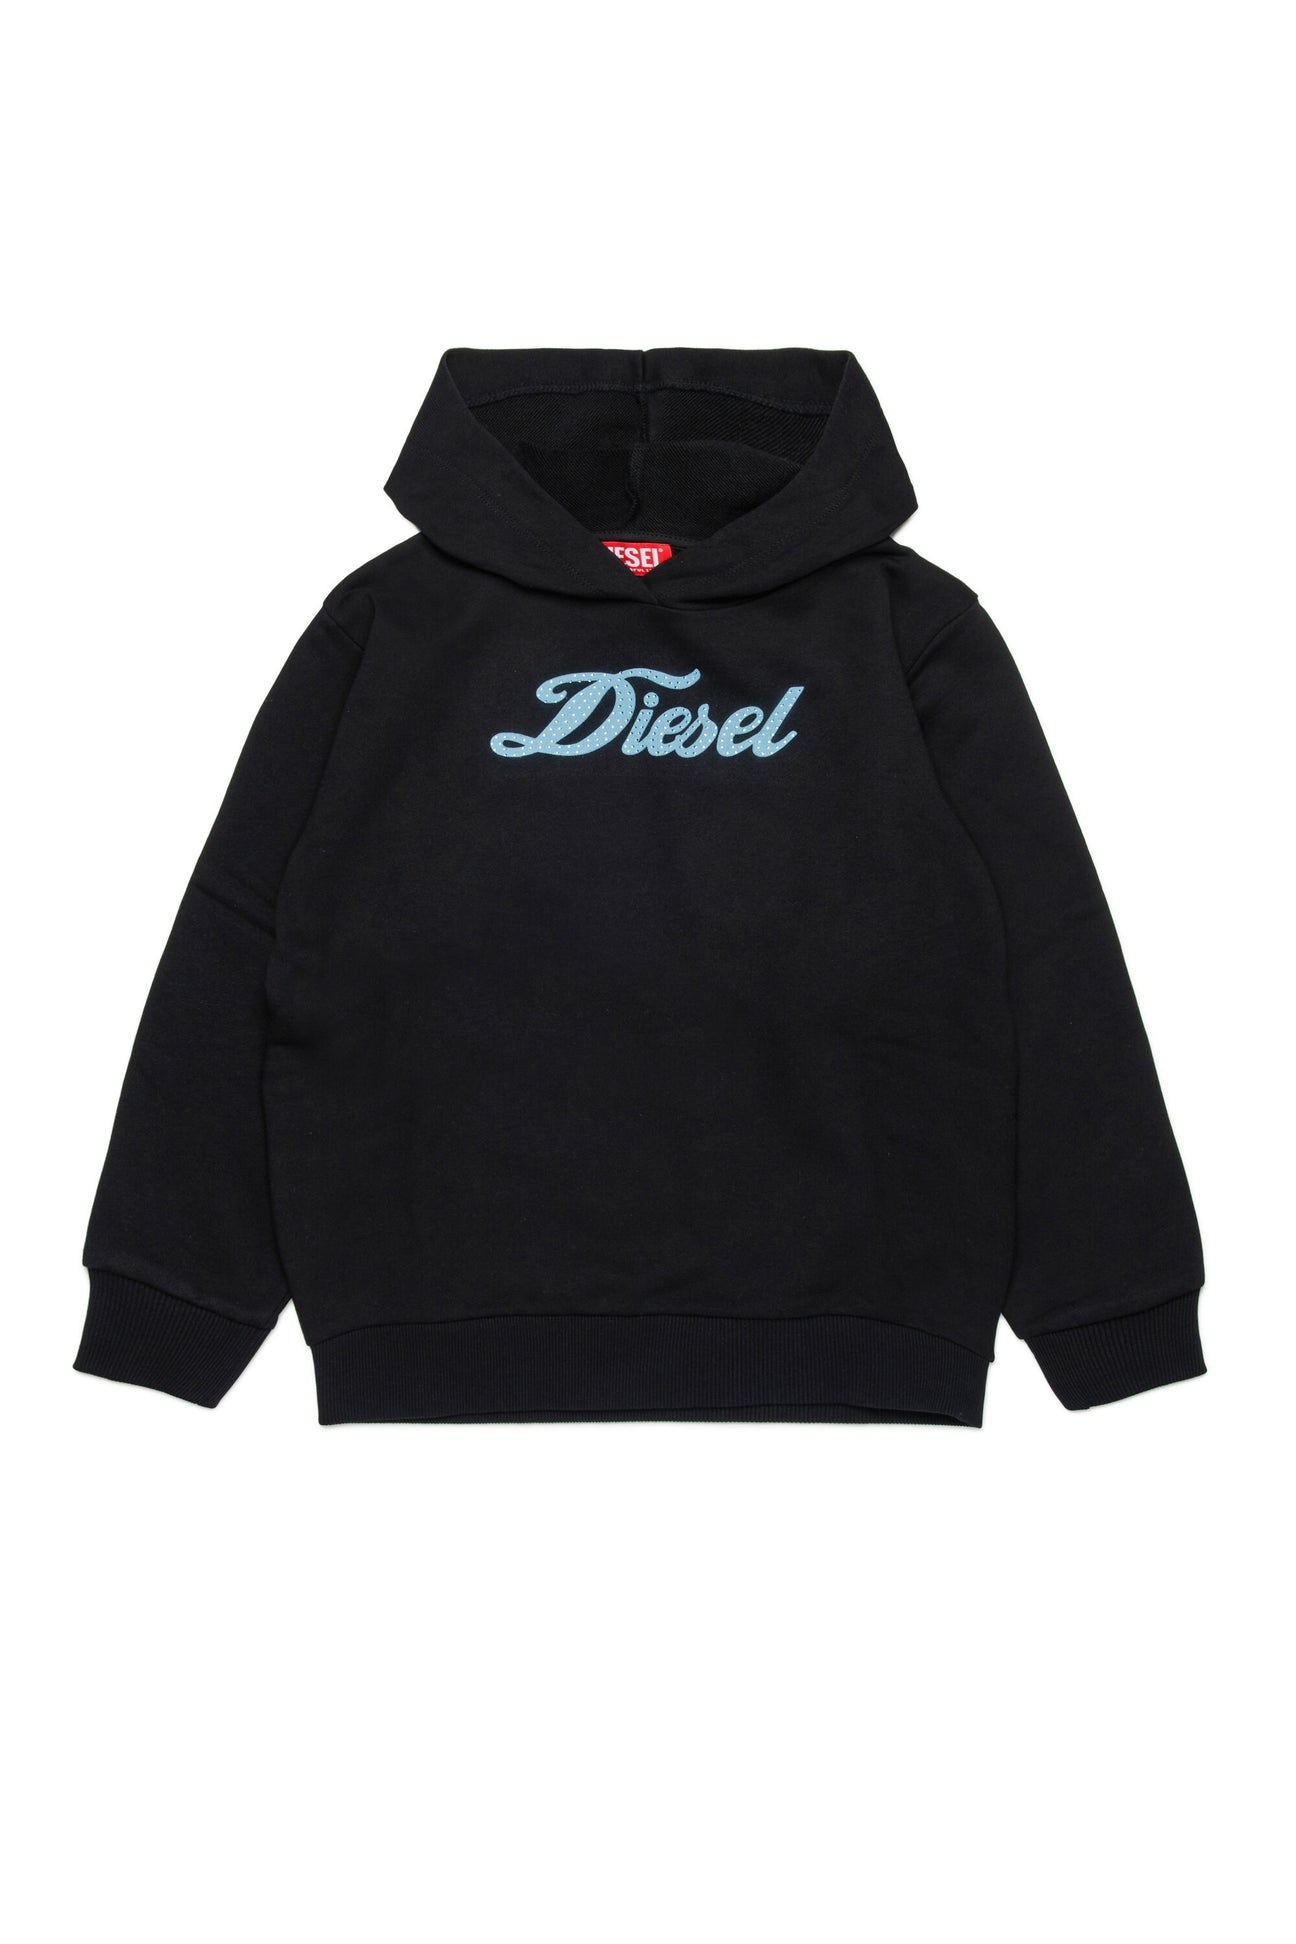 Hooded sweatshirt with cursive Diesel logo 